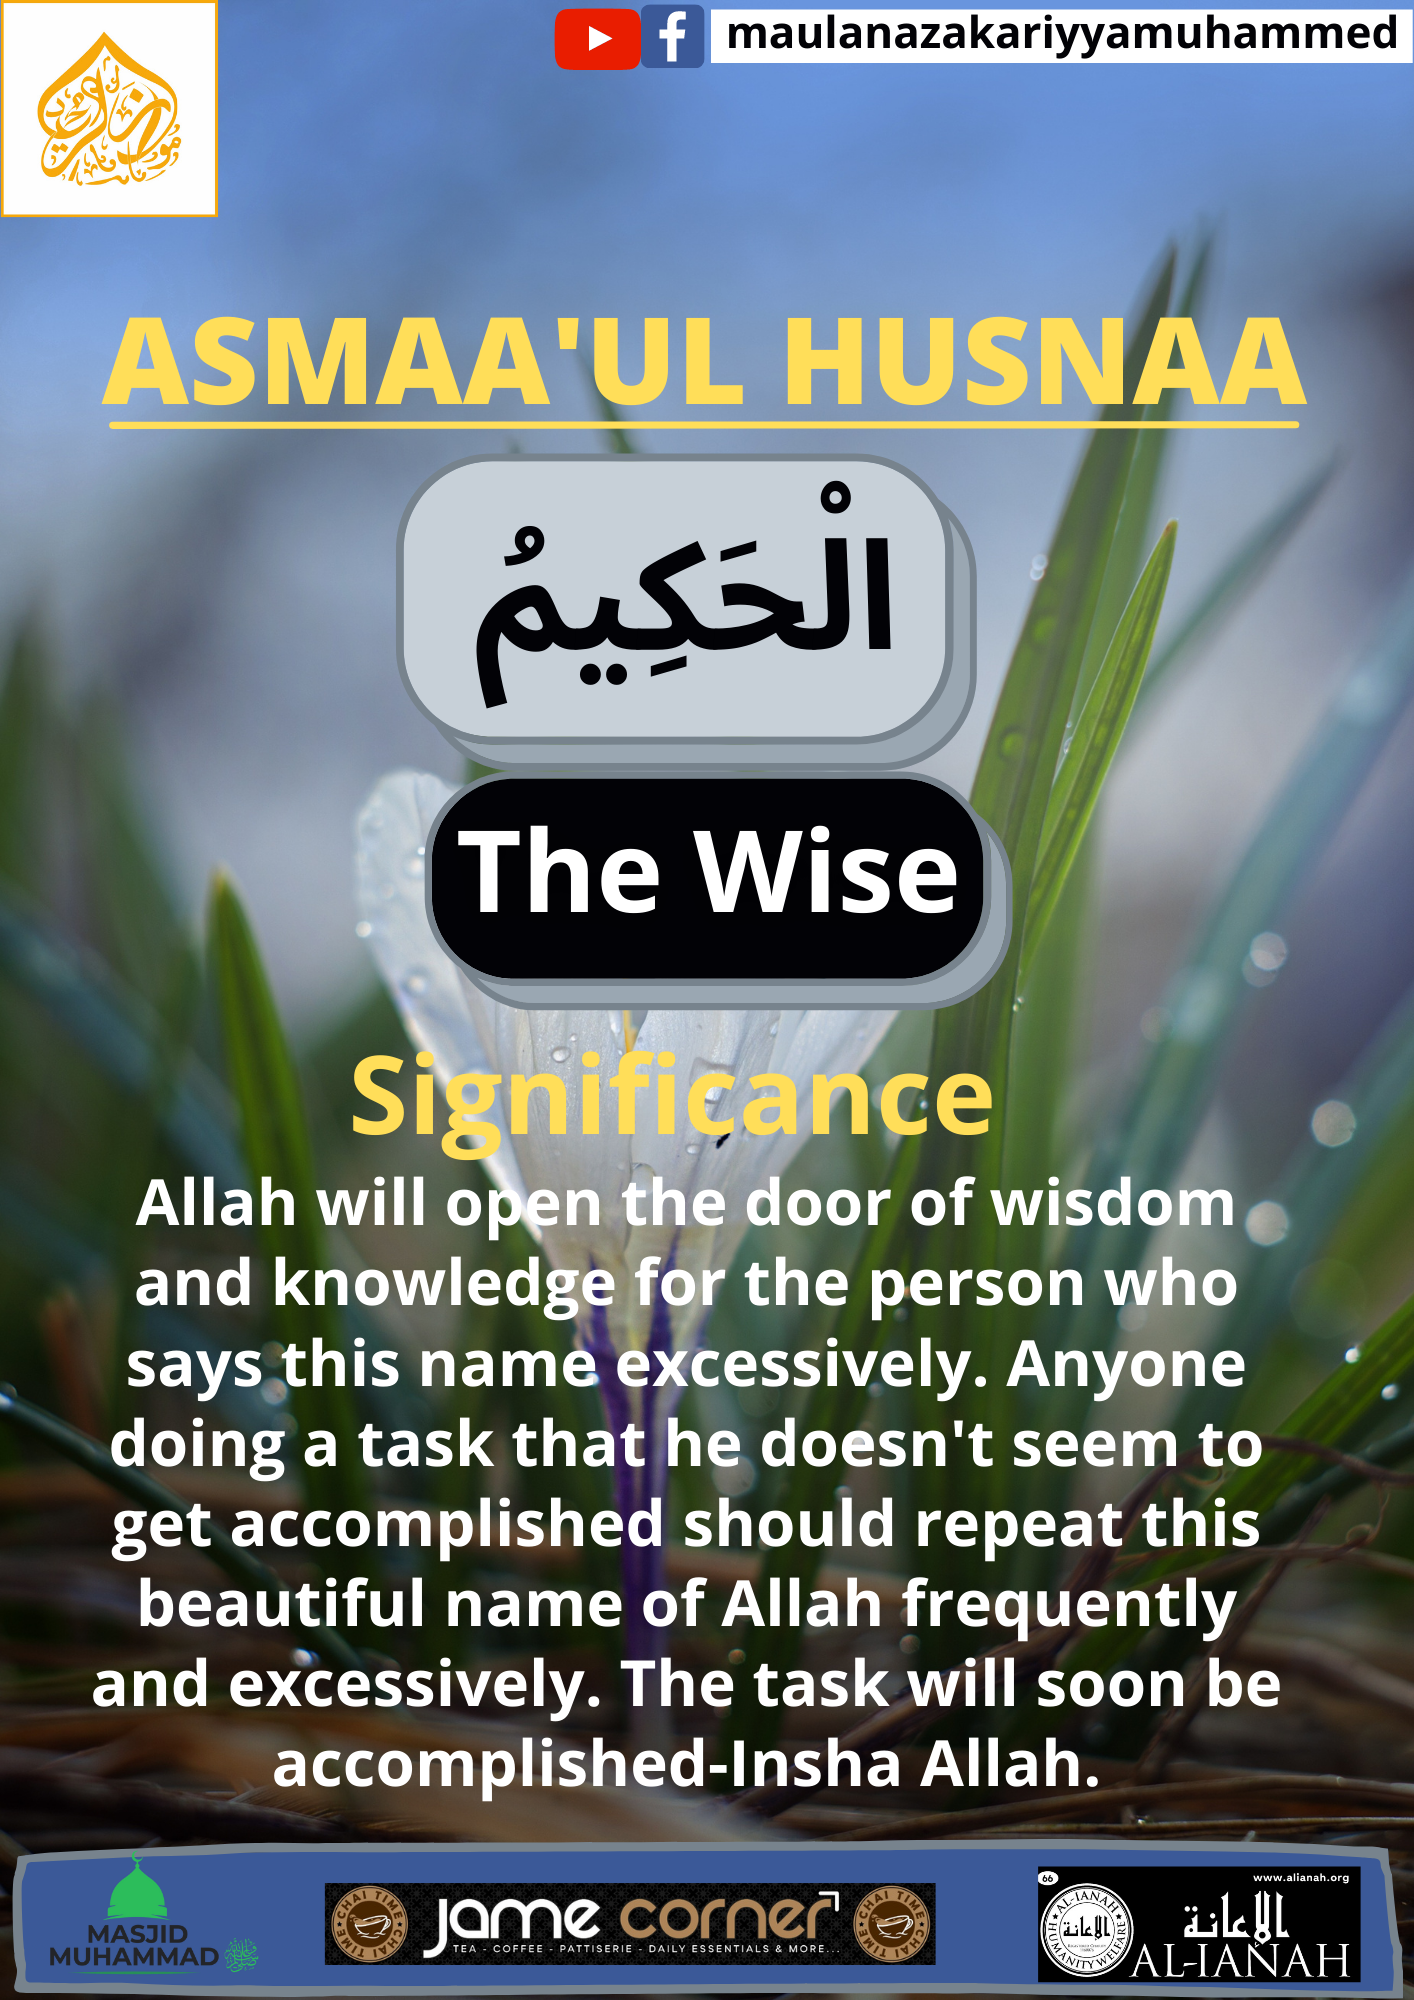 ASMAA’UL HUSNAA (Al-Hakeem)